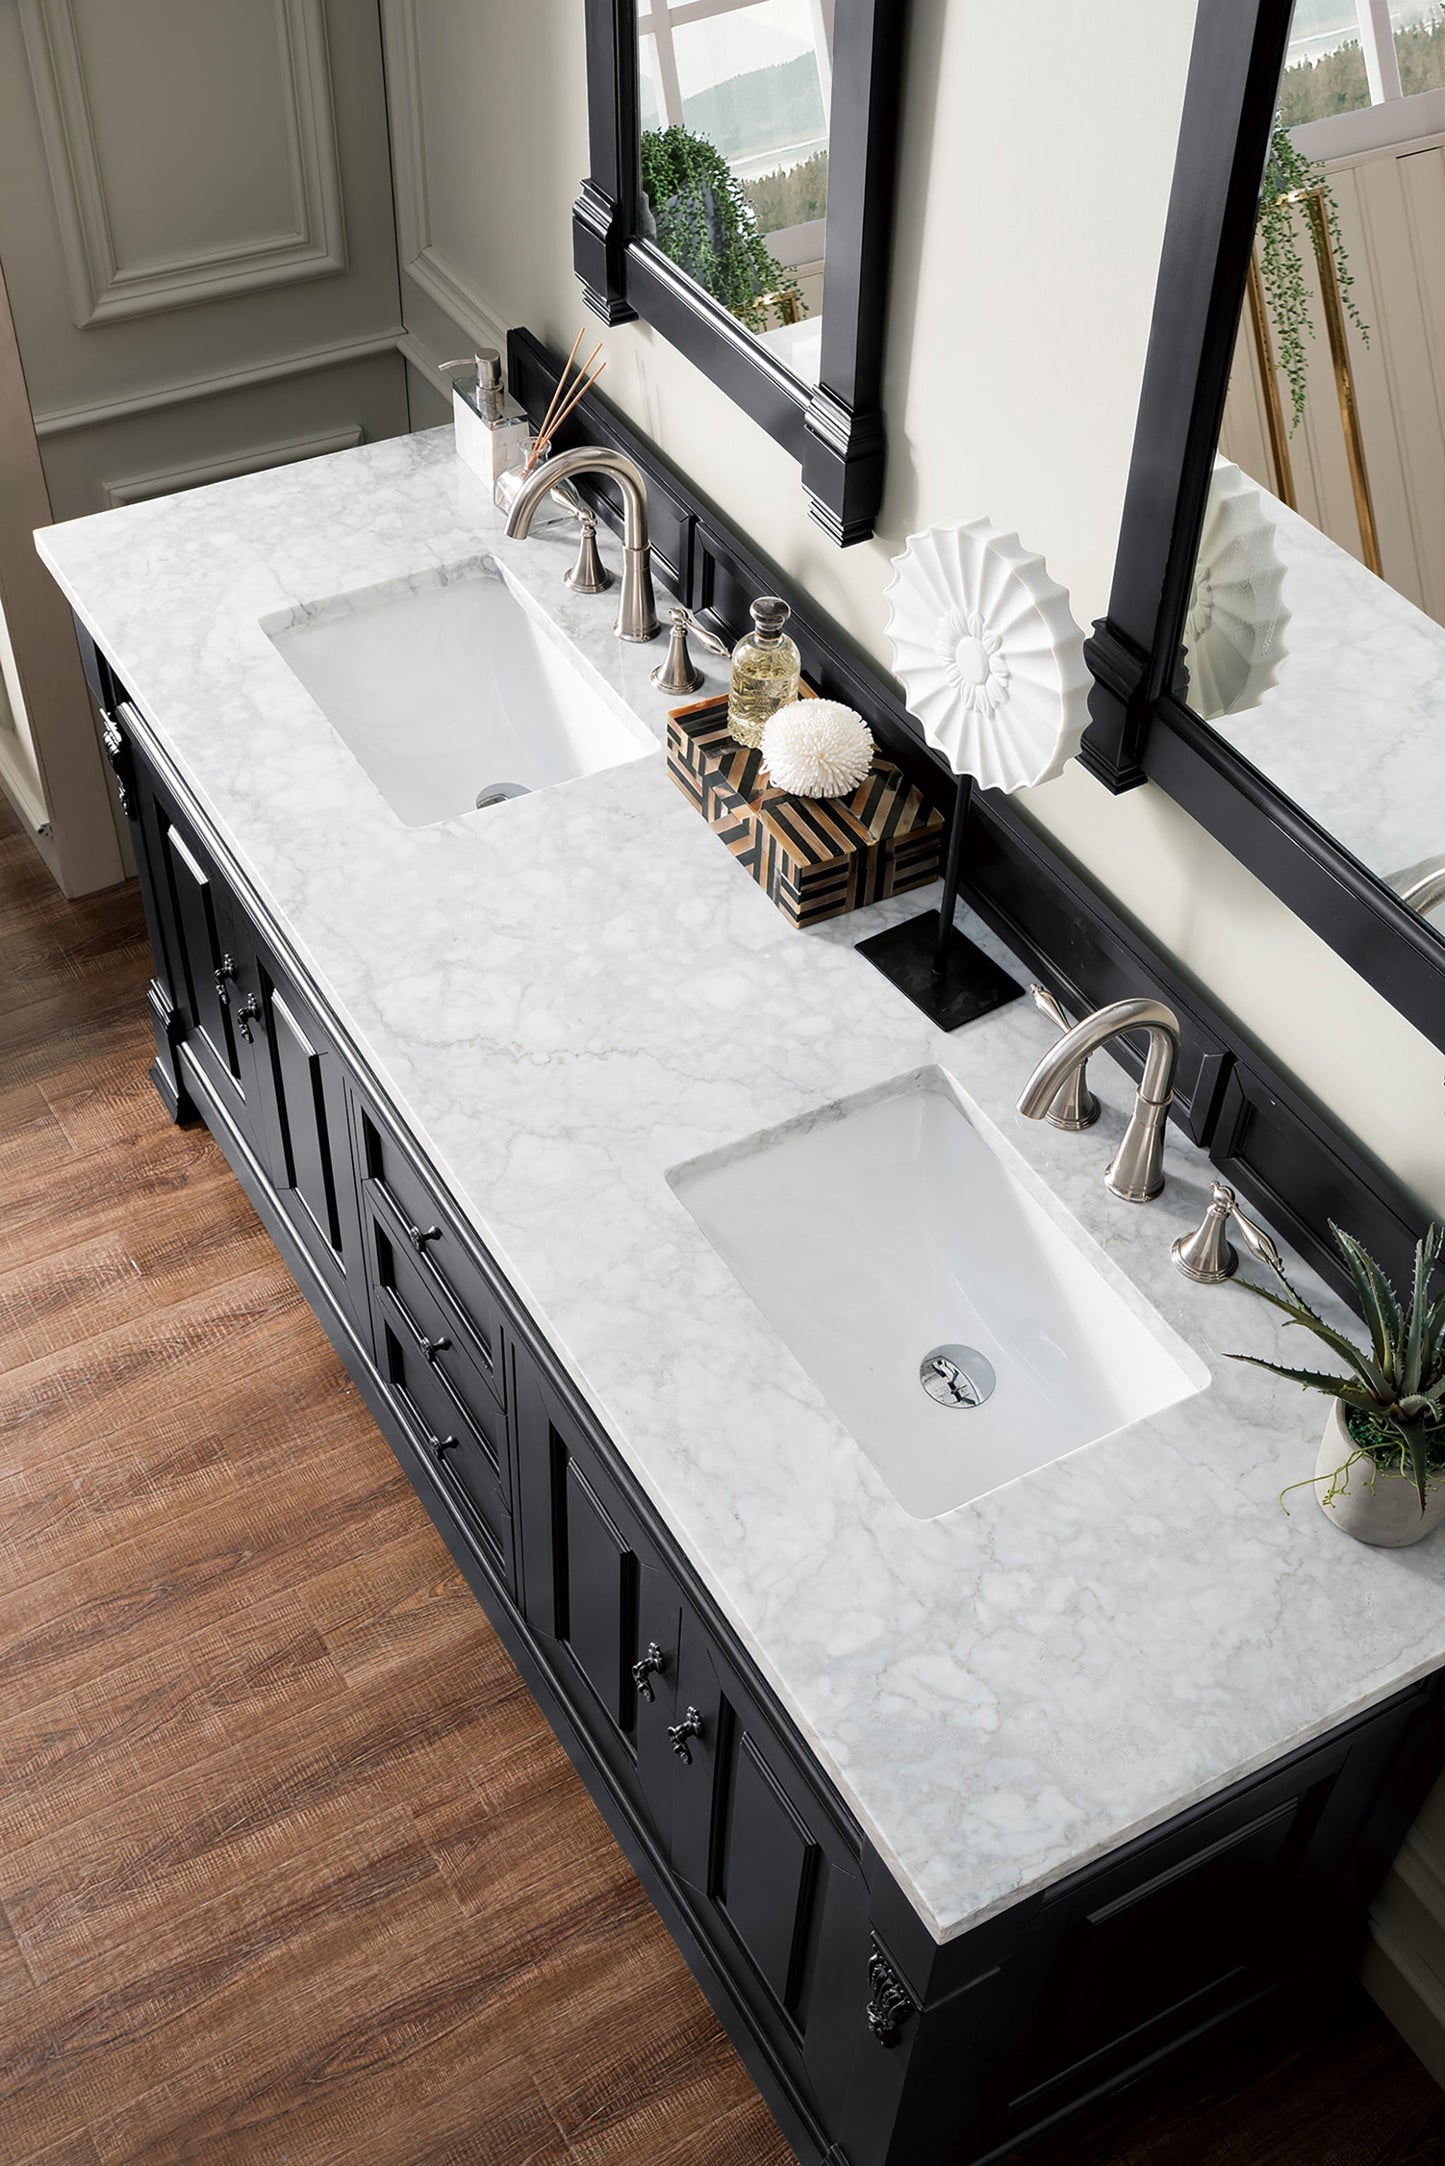 
                  
                    Brookfield 60" Double Bathroom Vanity in Antique Black Single Bathroom Vanity James Martin Vanities Carrara White Marble 
                  
                